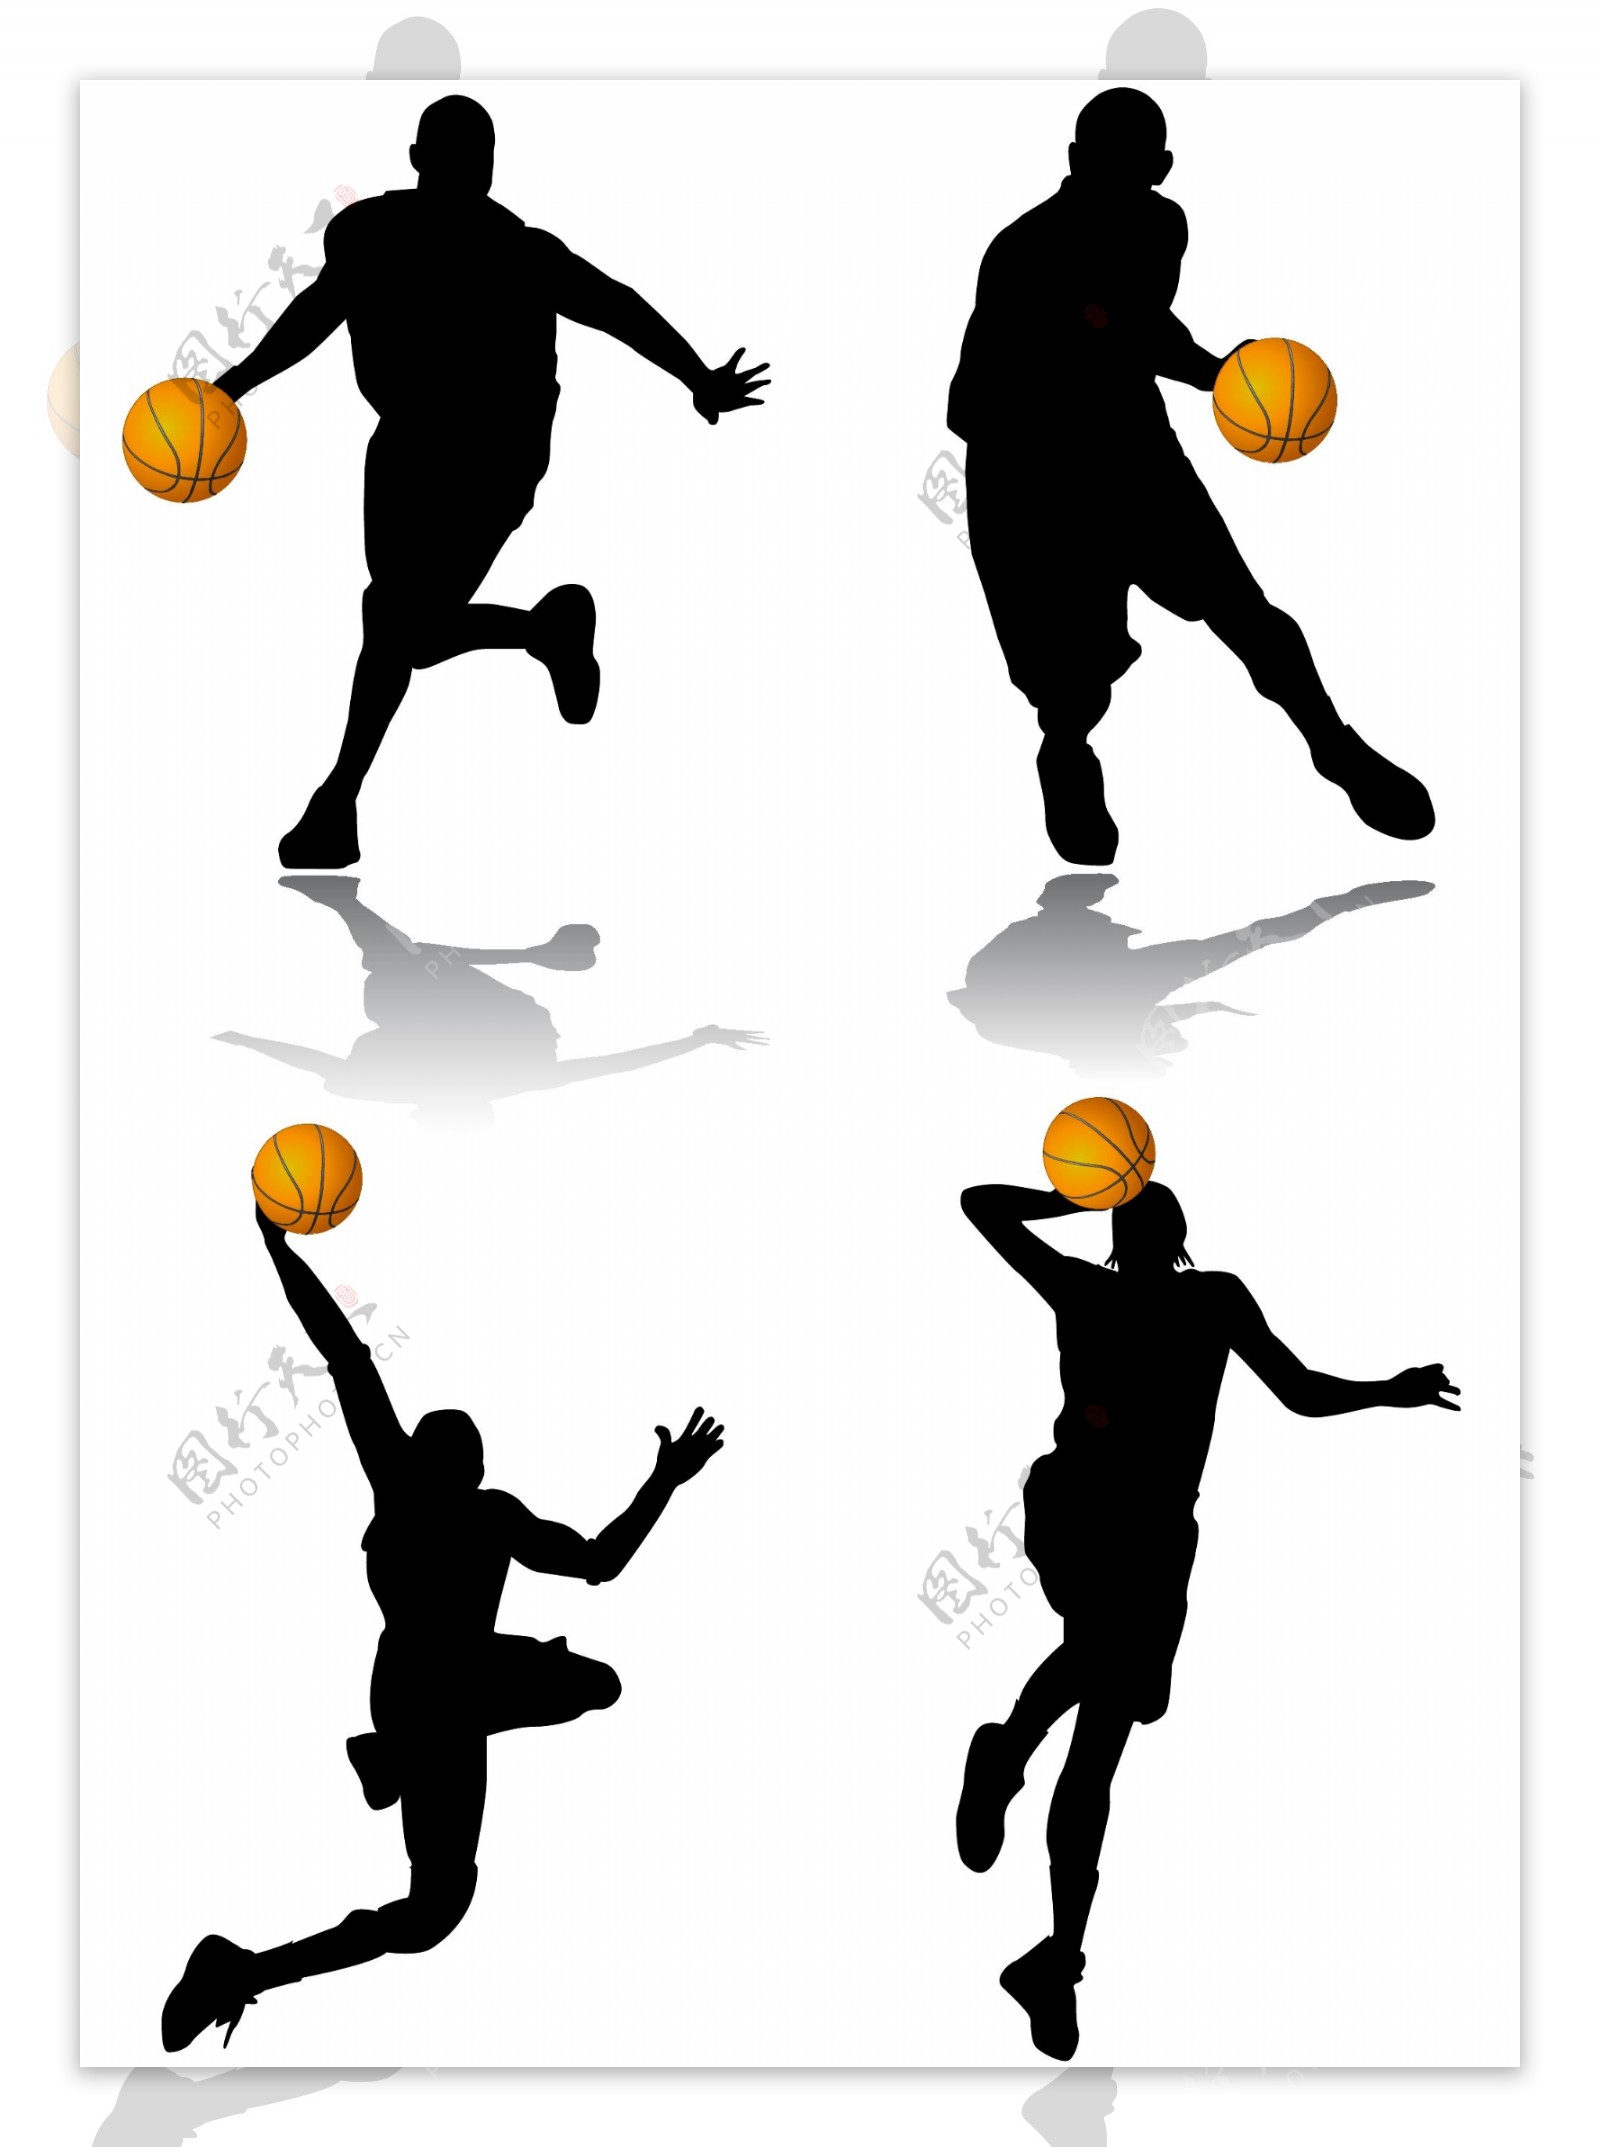 篮球上篮动作剪影篮球运球动作剪影篮球扣篮动作剪影eps